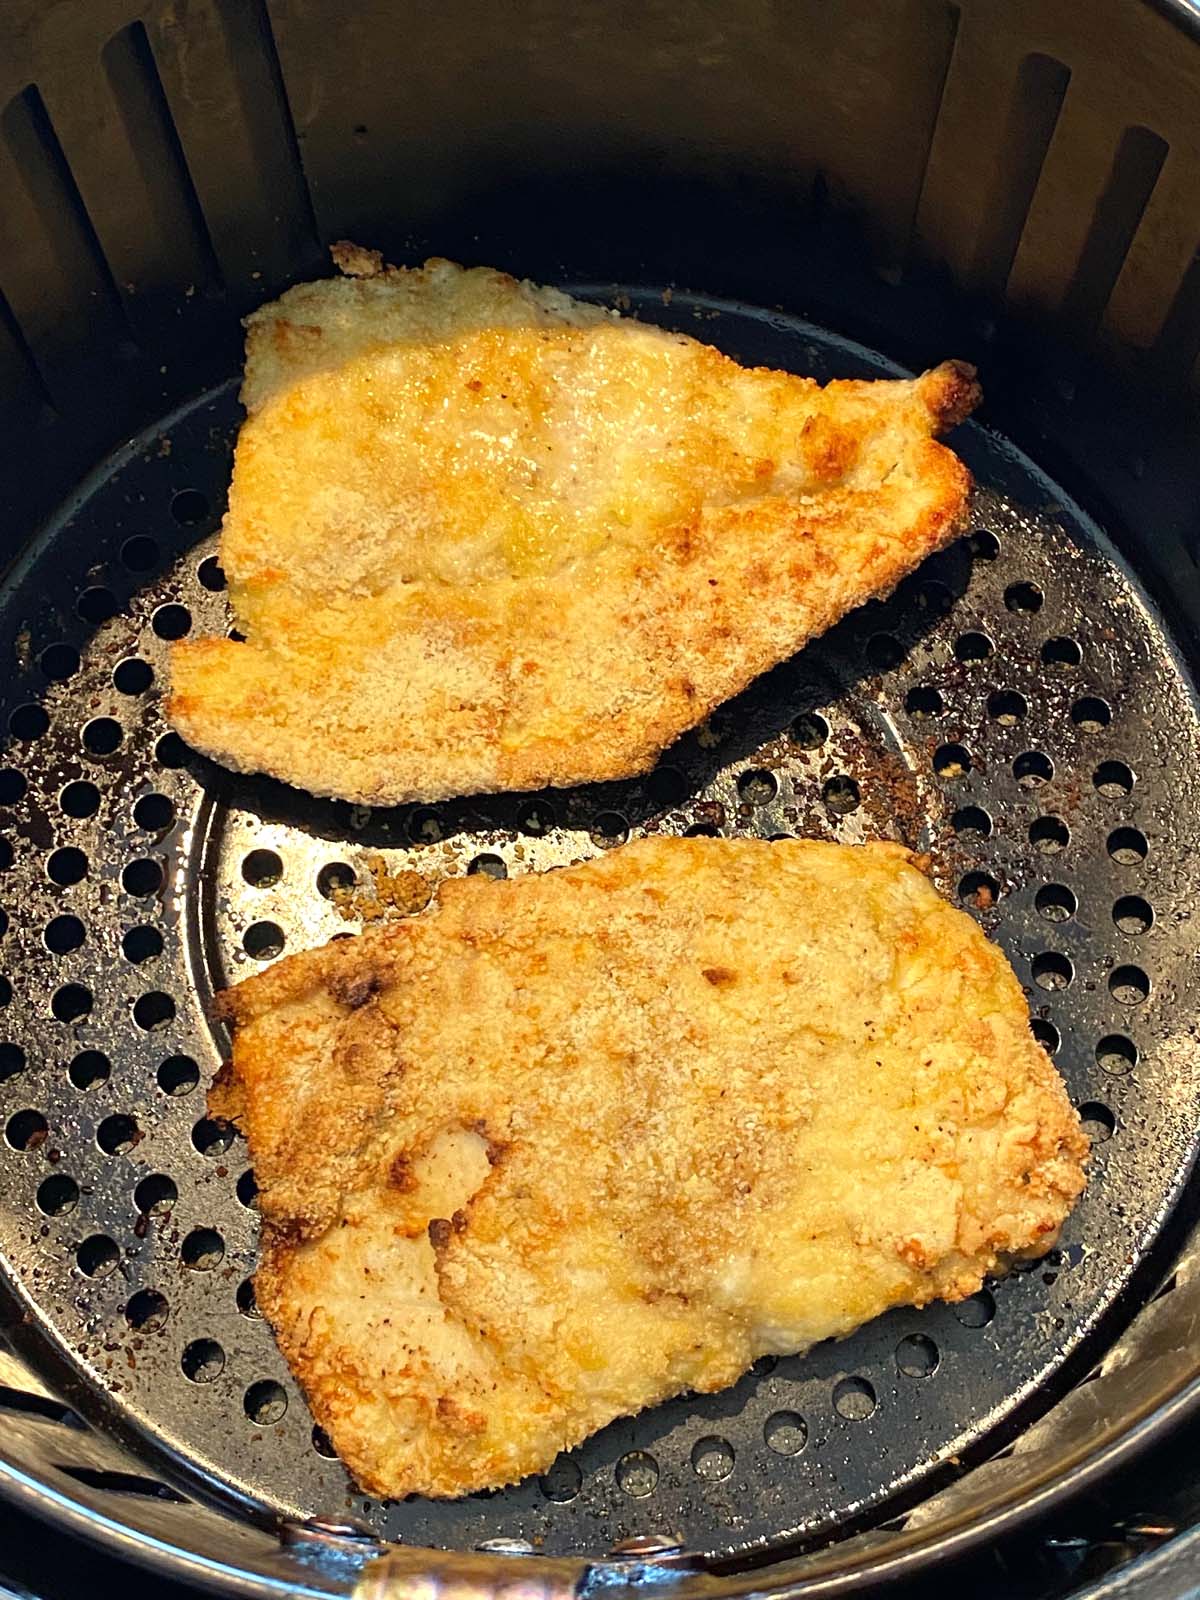 https://www.melaniecooks.com/wp-content/uploads/2021/10/air-fryer-almond-flour-chicken-4.jpg